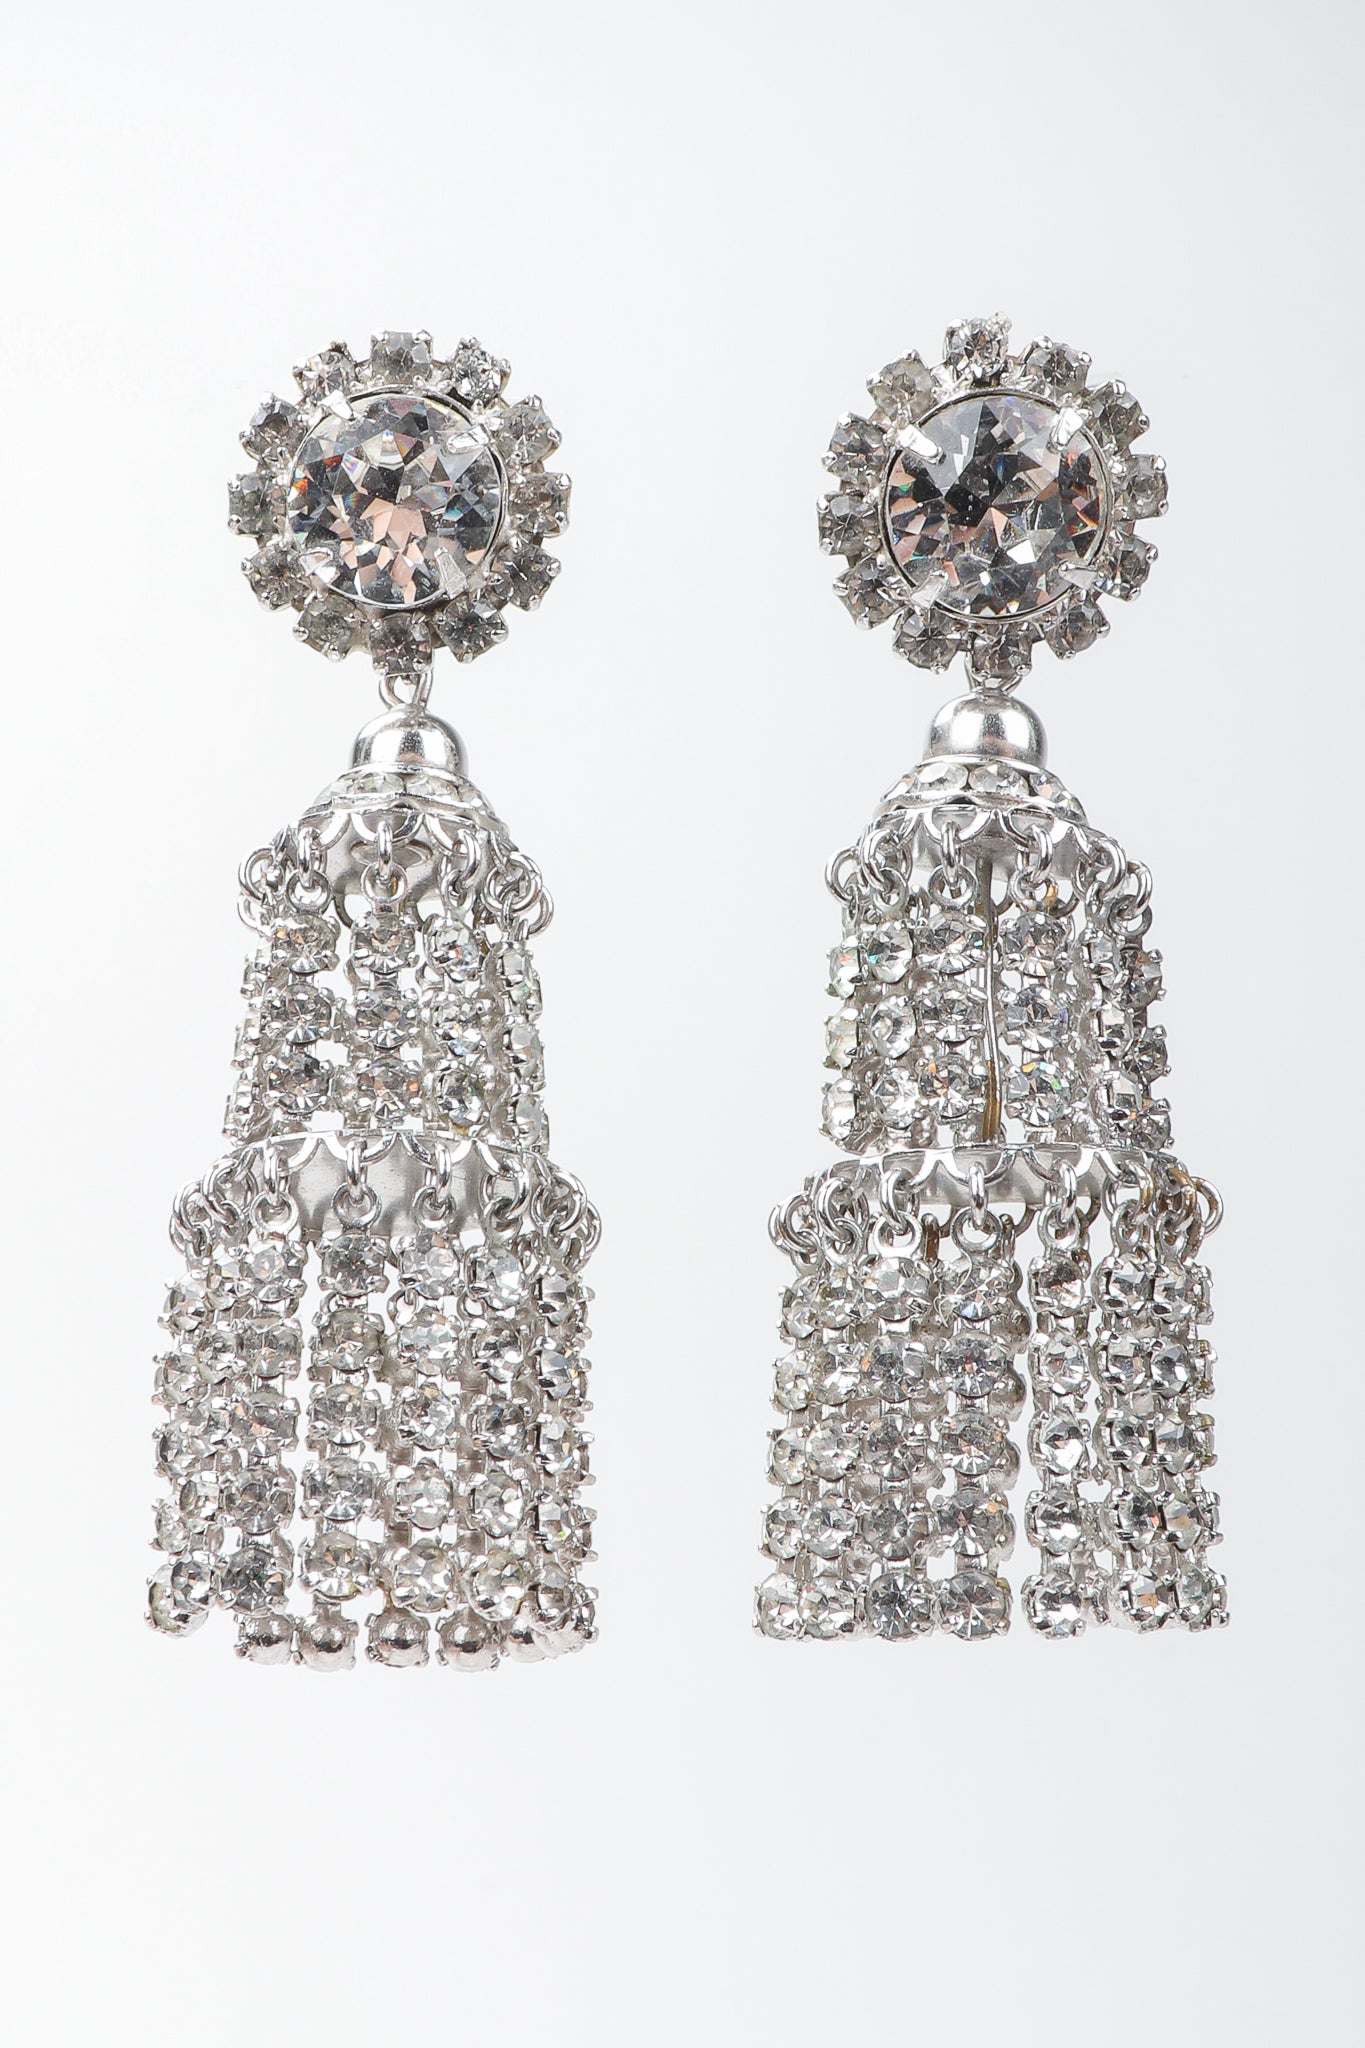 Vintage Rhinestone Crystal Fringe Chandelier Earrings Hanging